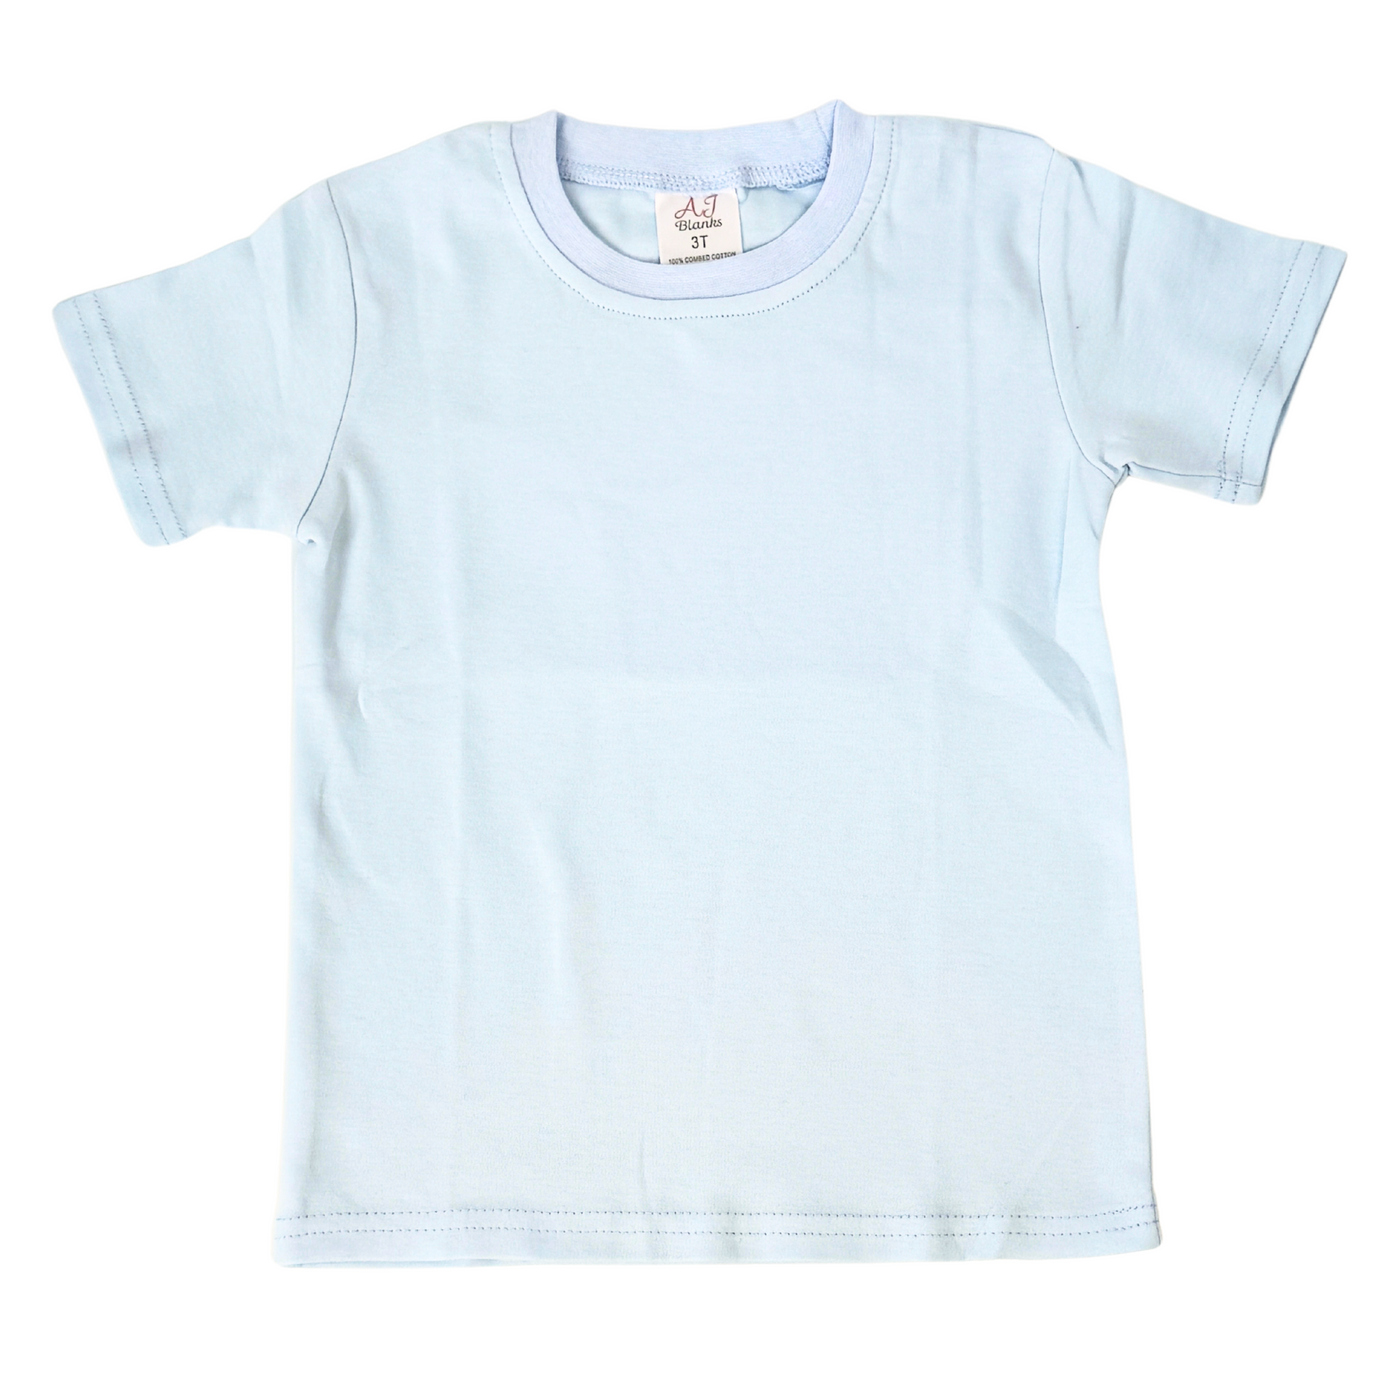 Unisex Short Sleeve Shirts